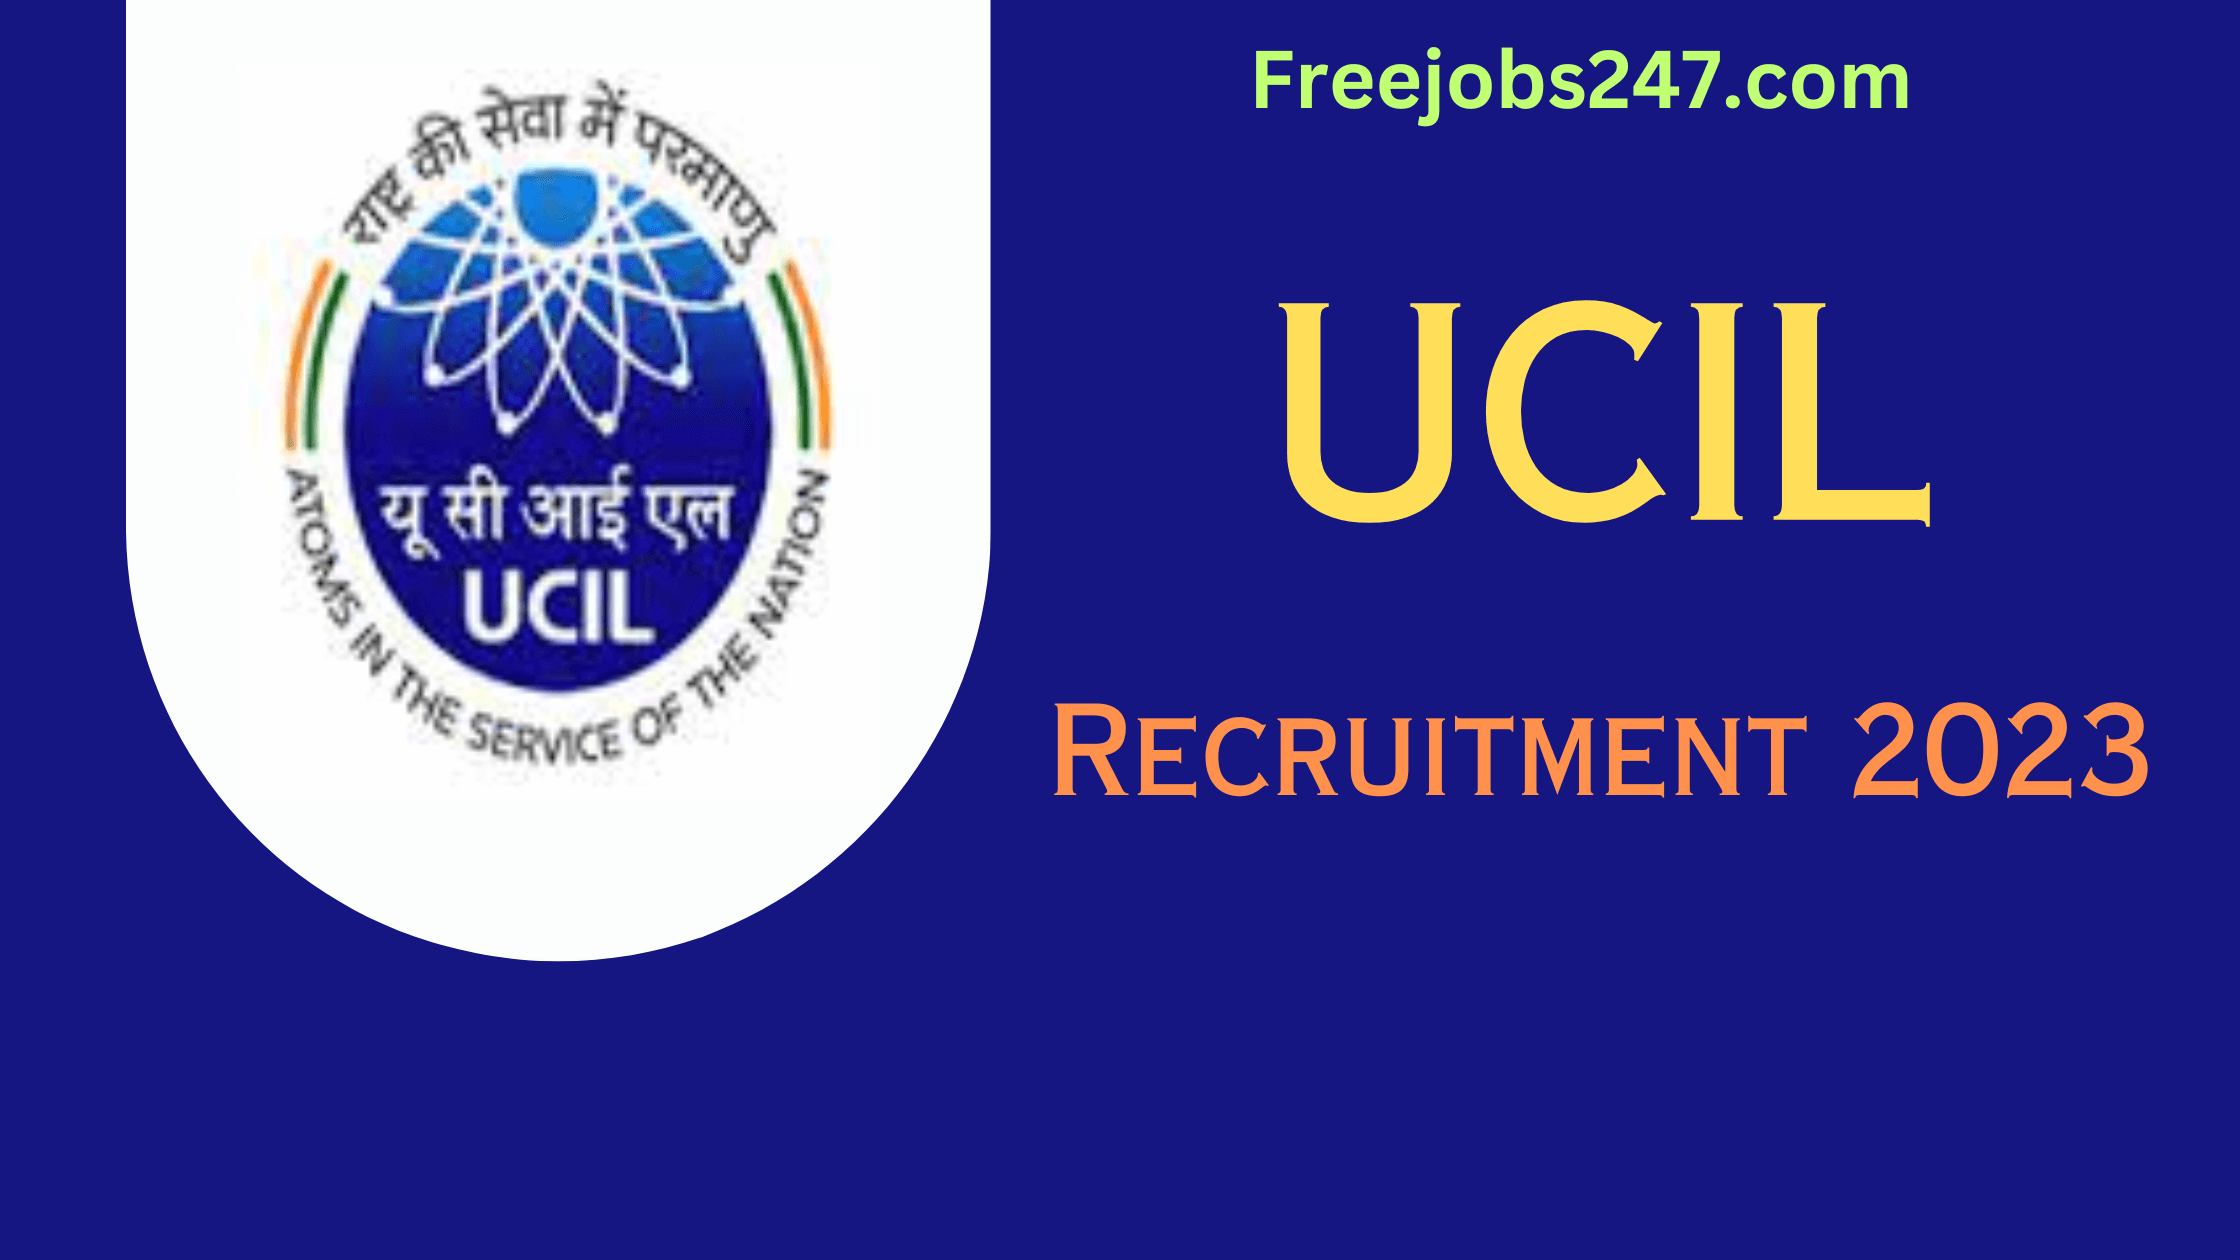 UCIL Recruitment 2023